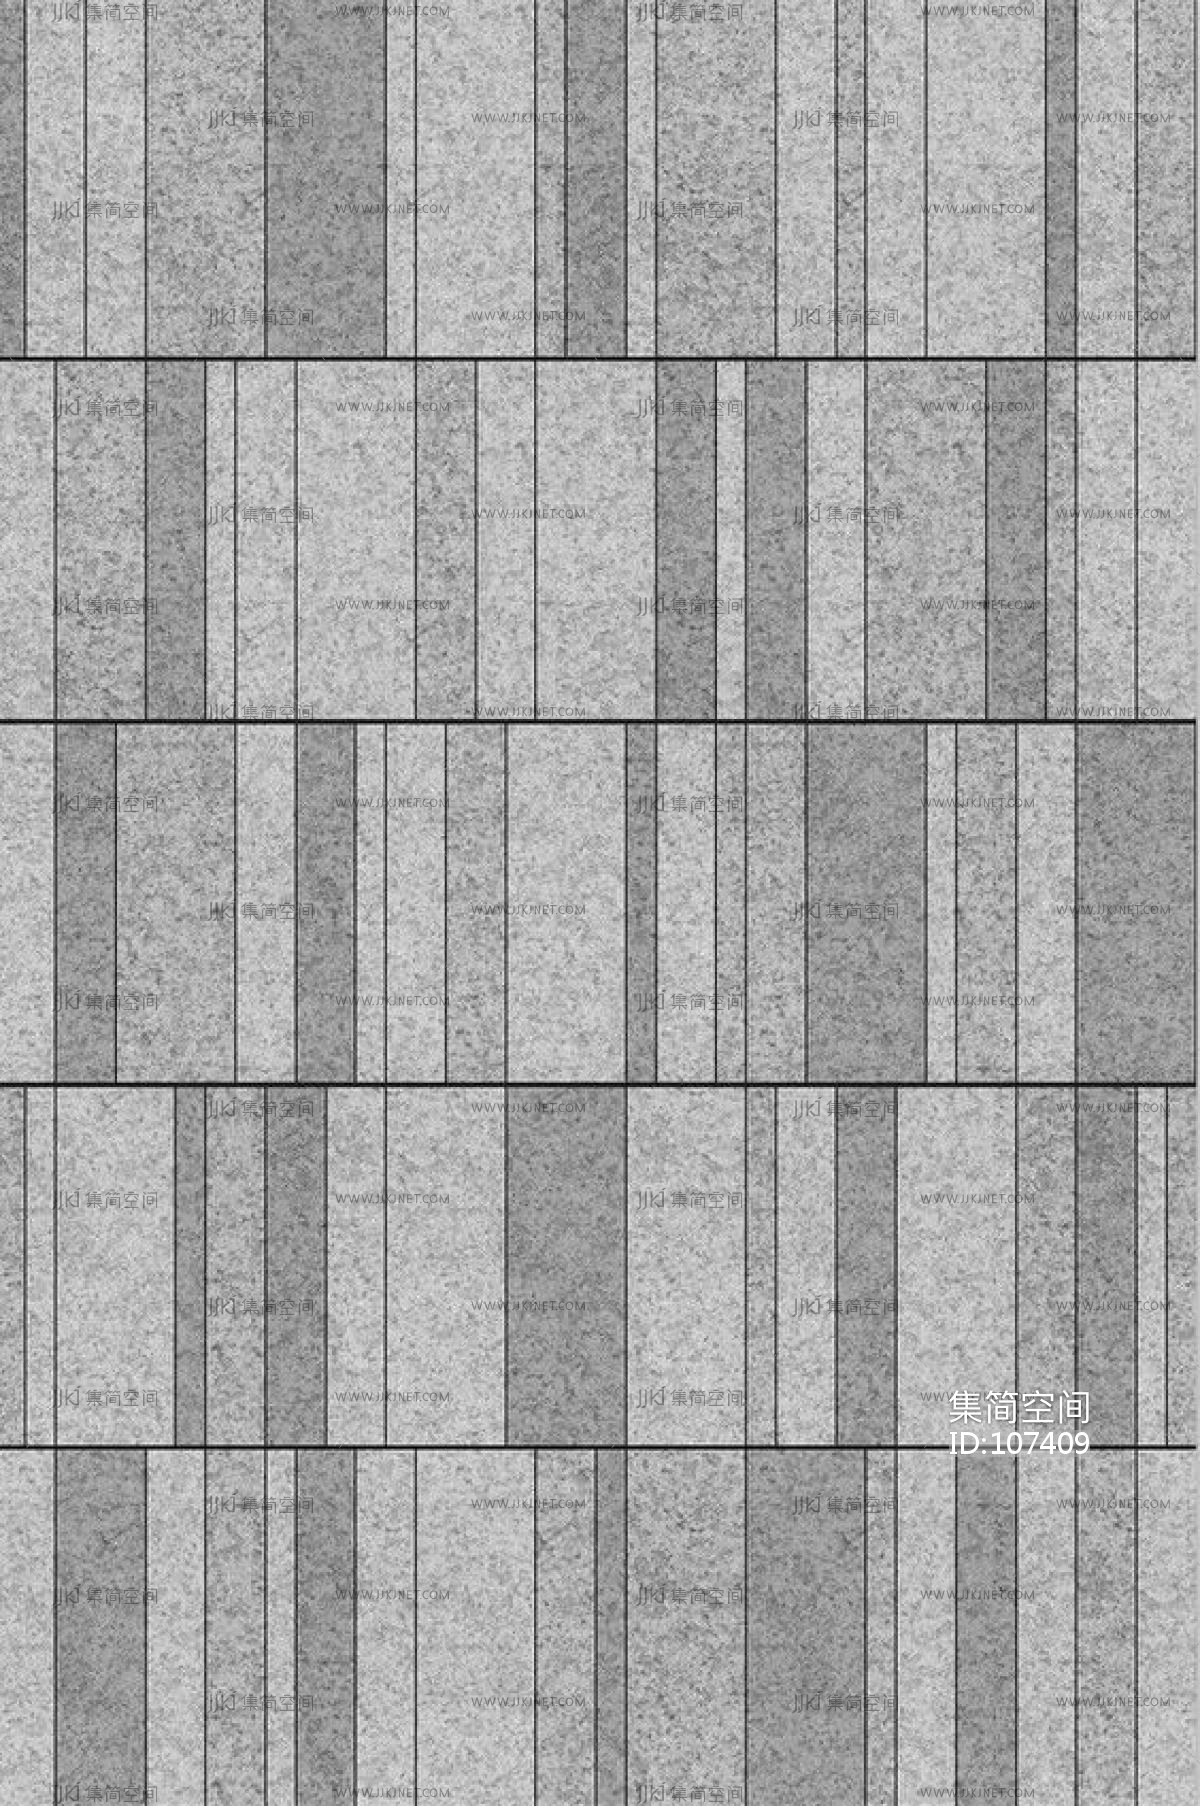 室外铺地铺装广场砖 (13)材质贴图下载-【集简空间】「每日更新」